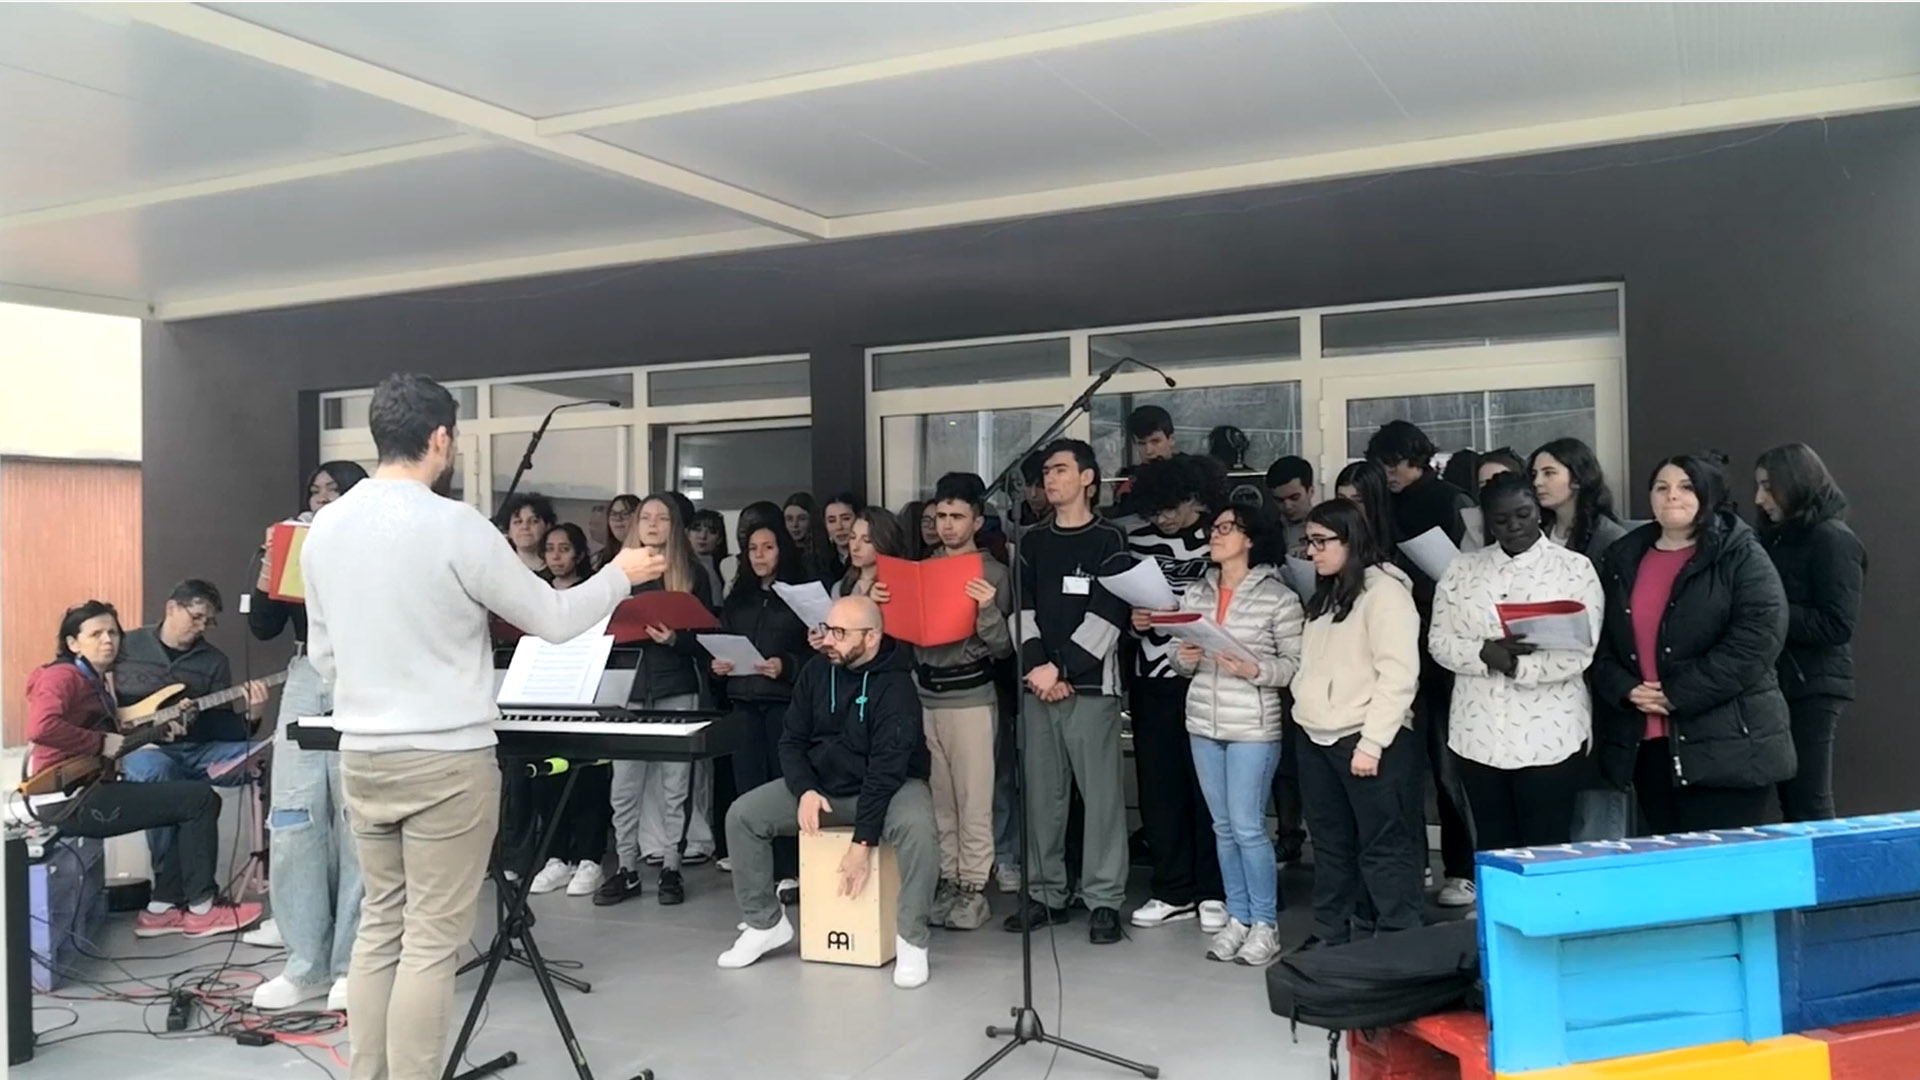 Peace of music: studenti in coro a Sarnico